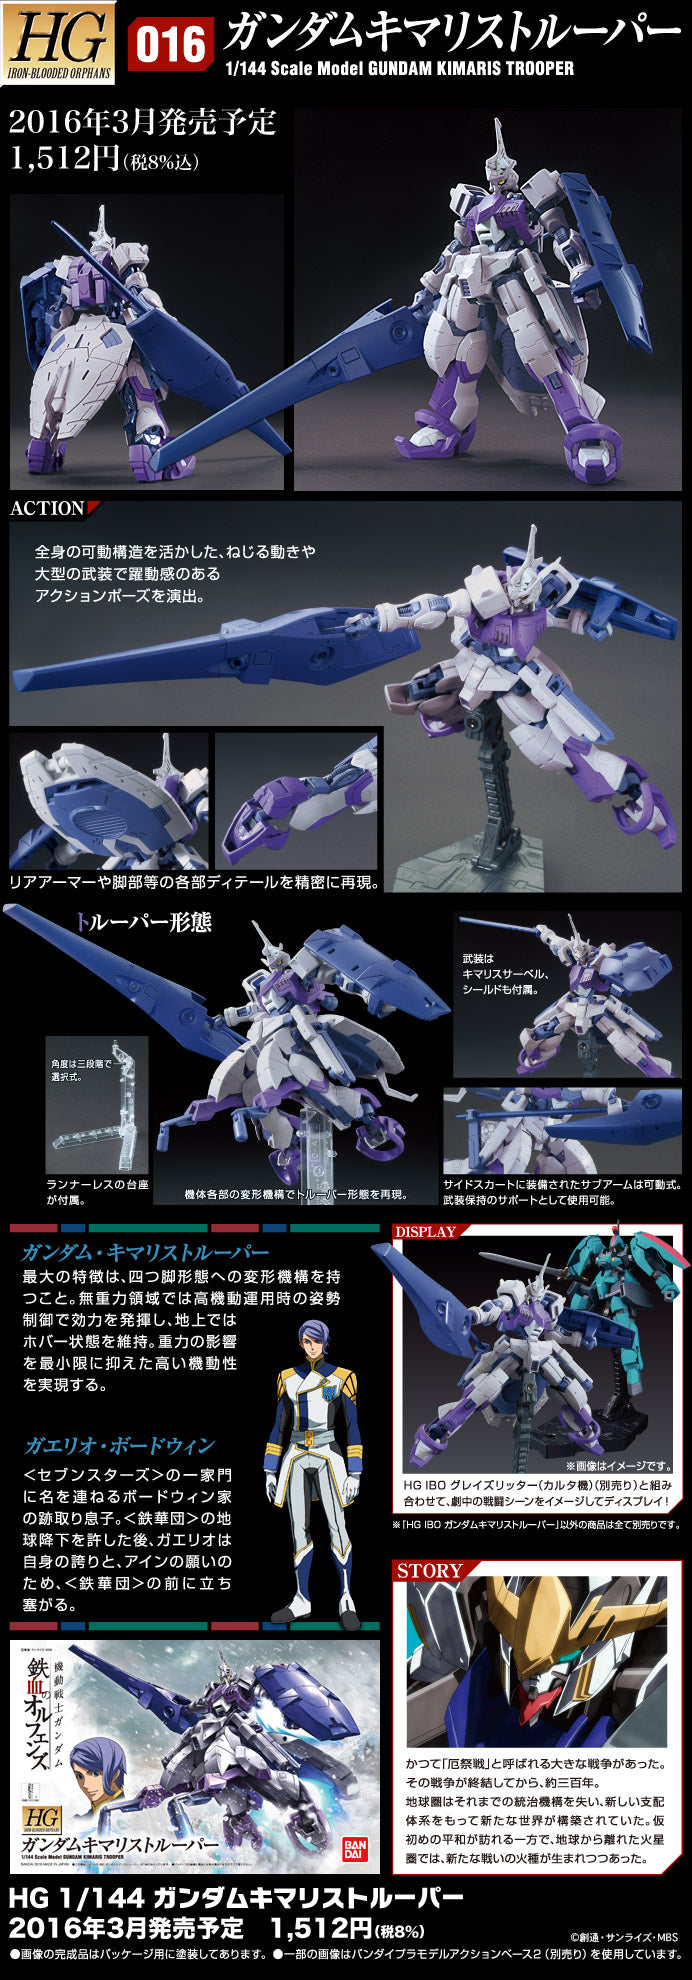 HG Gundam Kimaris Trooper 1/144